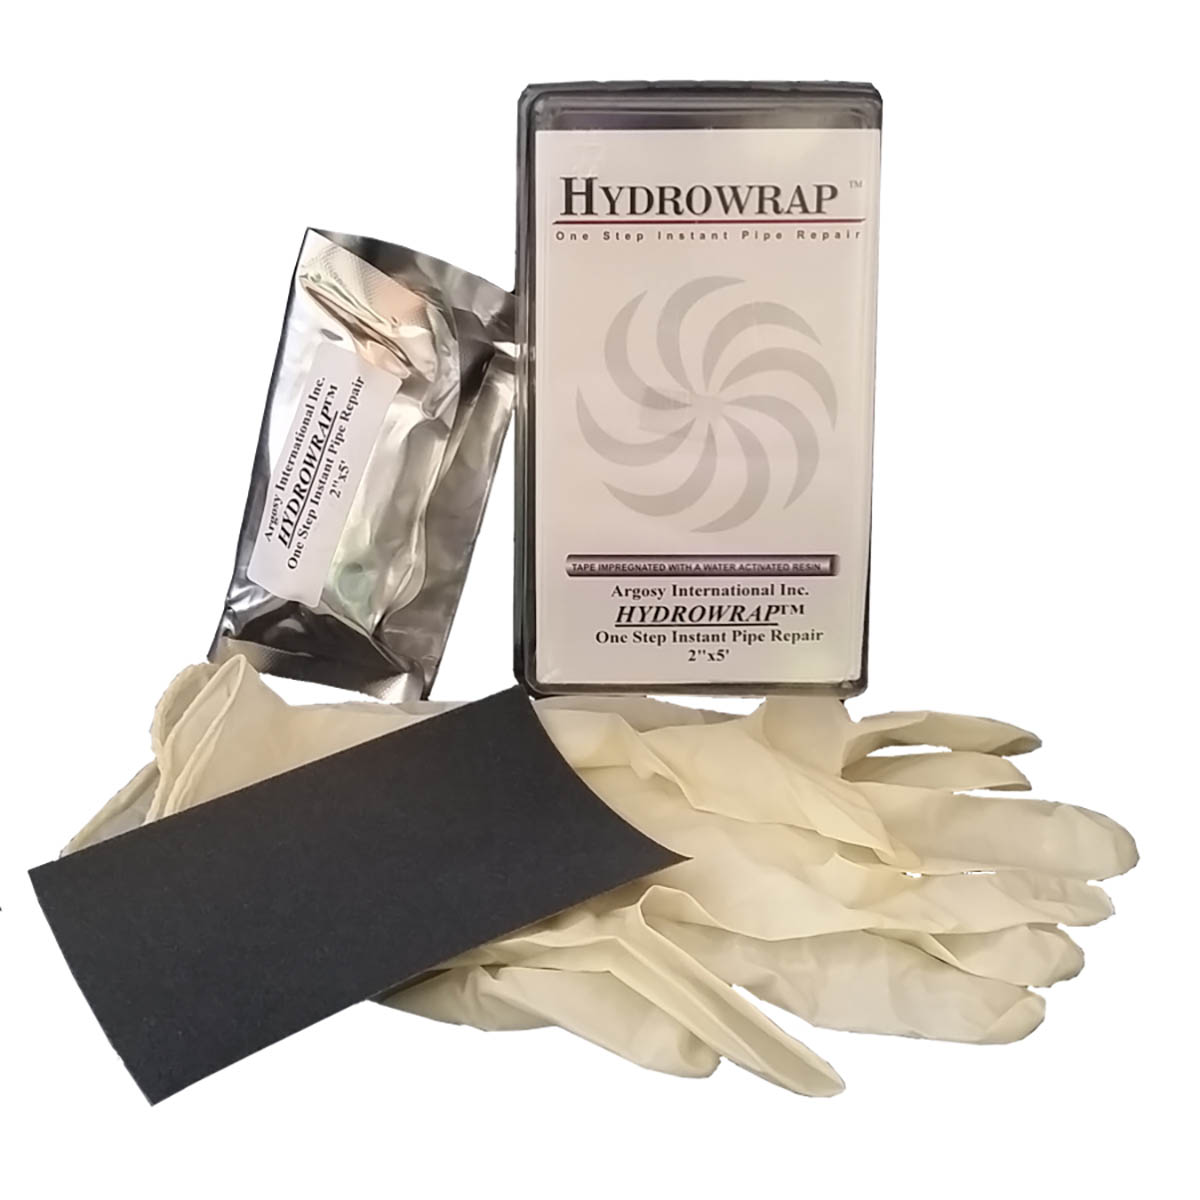 Hydrowrap